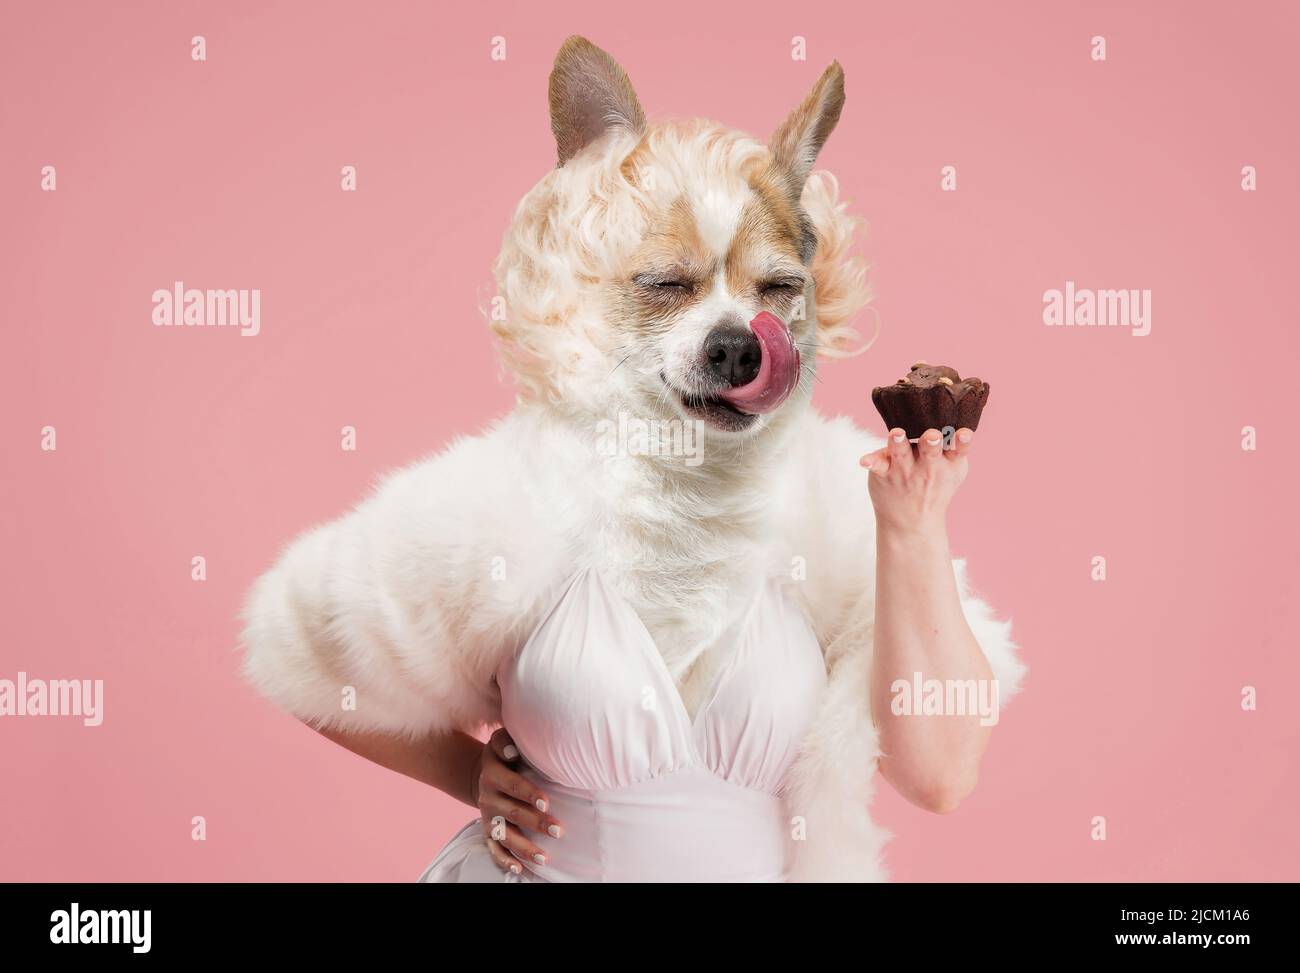 Süßigkeiten. Elegante schöne weibliche Modell trägt Retro-Stil Outfit von niedlichen Hund Kopf isoliert auf rosa Hintergrund geleitet. Vergleich von Kunst, Surrealismus Stockfoto